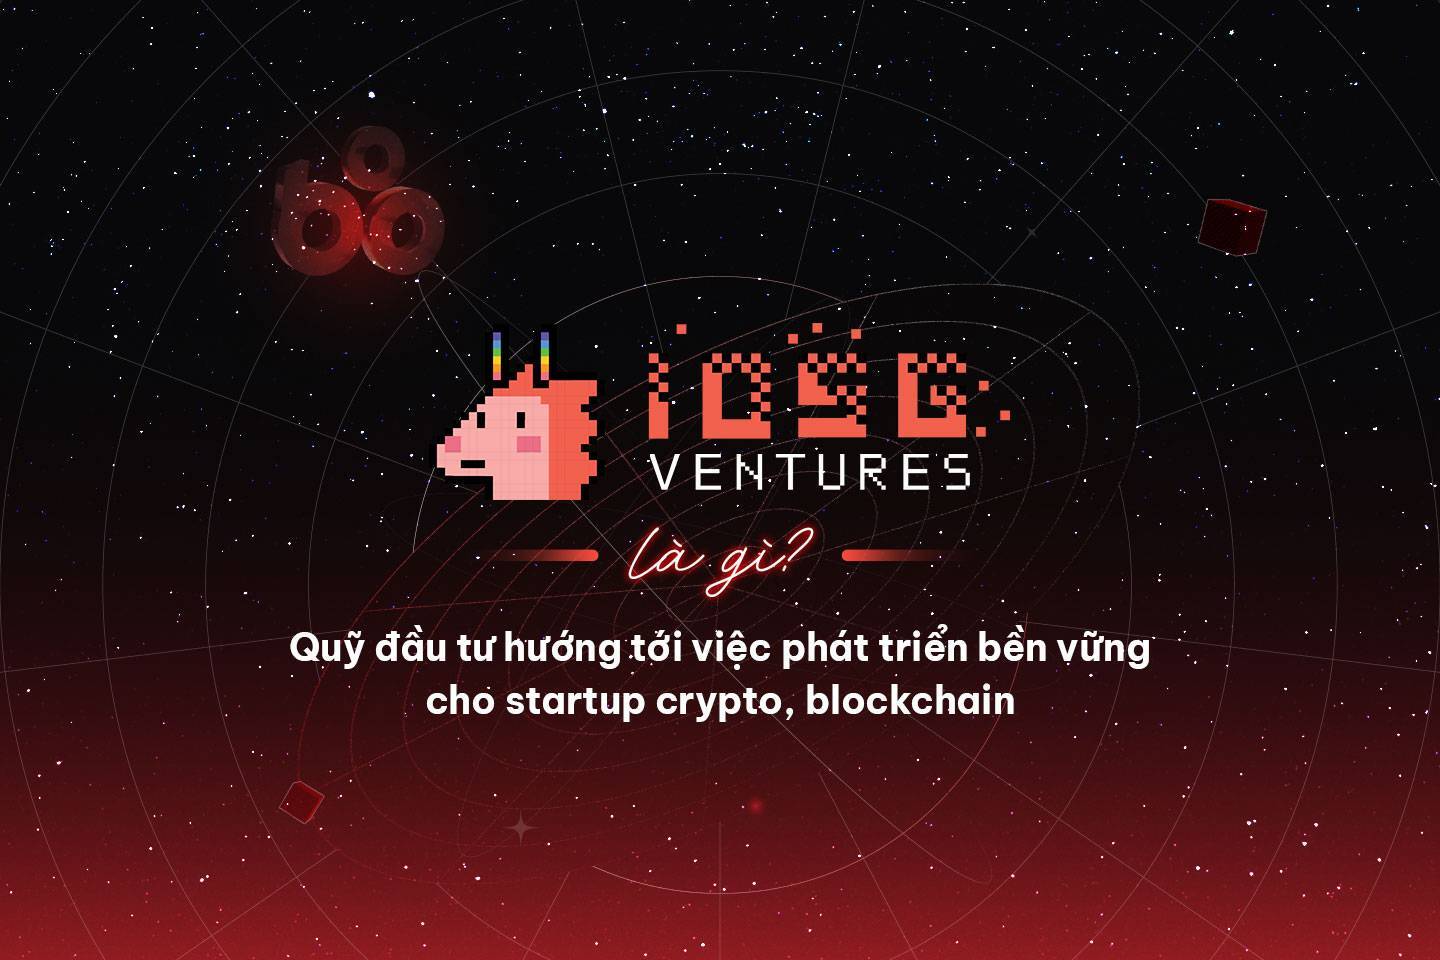 Iosg Ventures Là Gì Quỹ Đầu Tư Hướng Tới Việc Phát Triển Bền Vững Cho Startup Crypto Blockchain